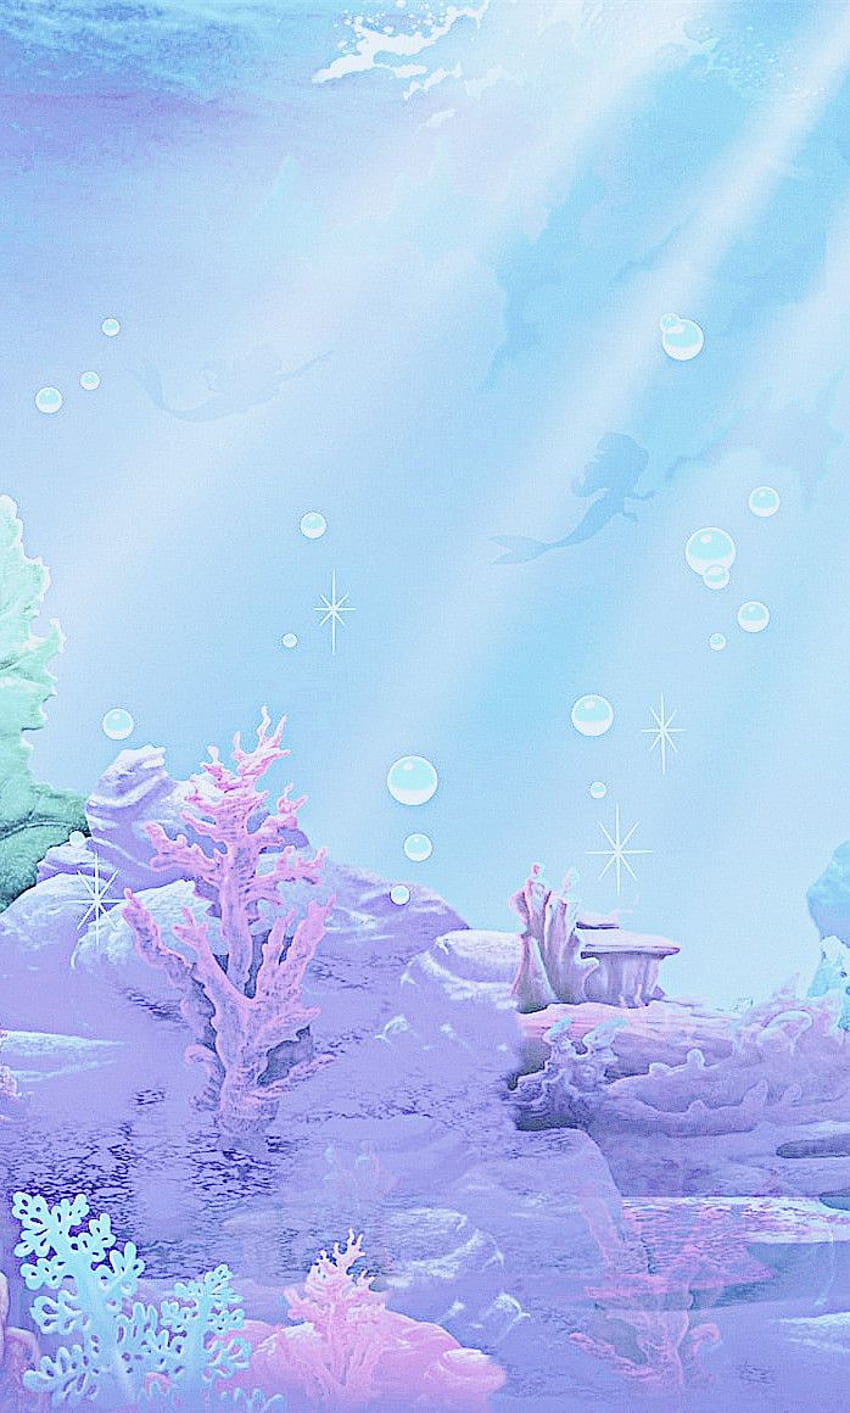 Abstract Mermaid 1024 x 1024 iPad Wallpaper